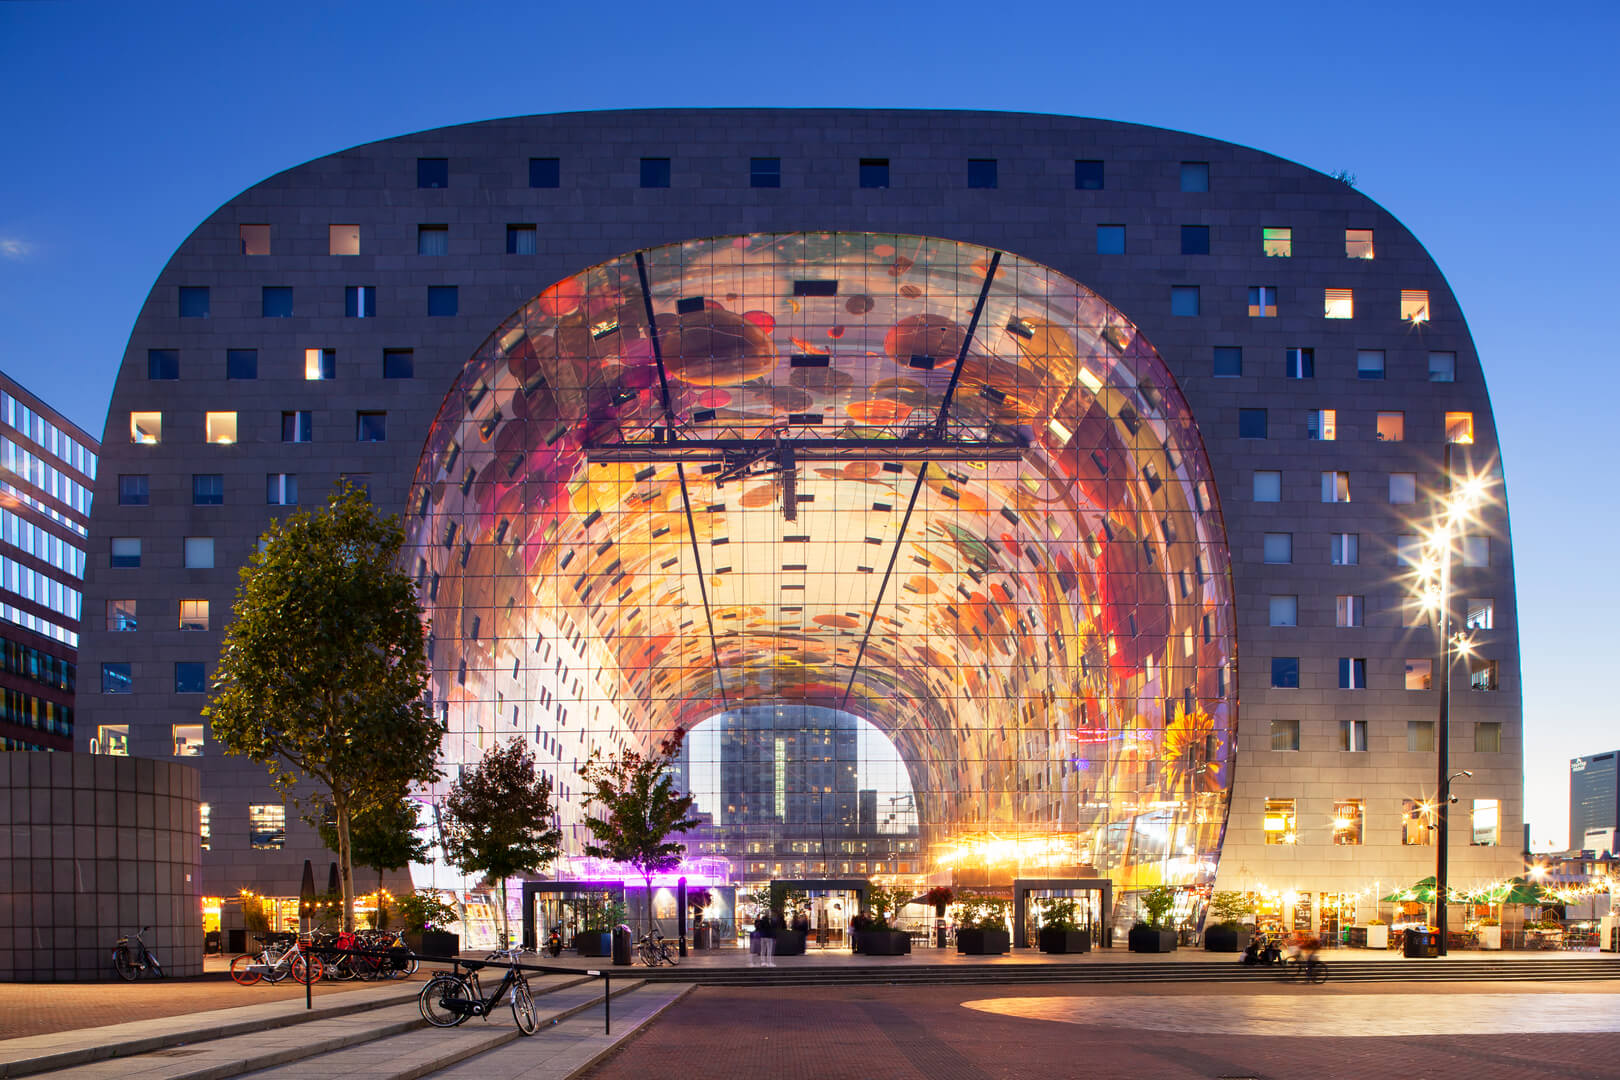 26 septembre 2018 : Extérieur au crépuscule de la célèbre markthal ou halle de marché à Rotterdam.